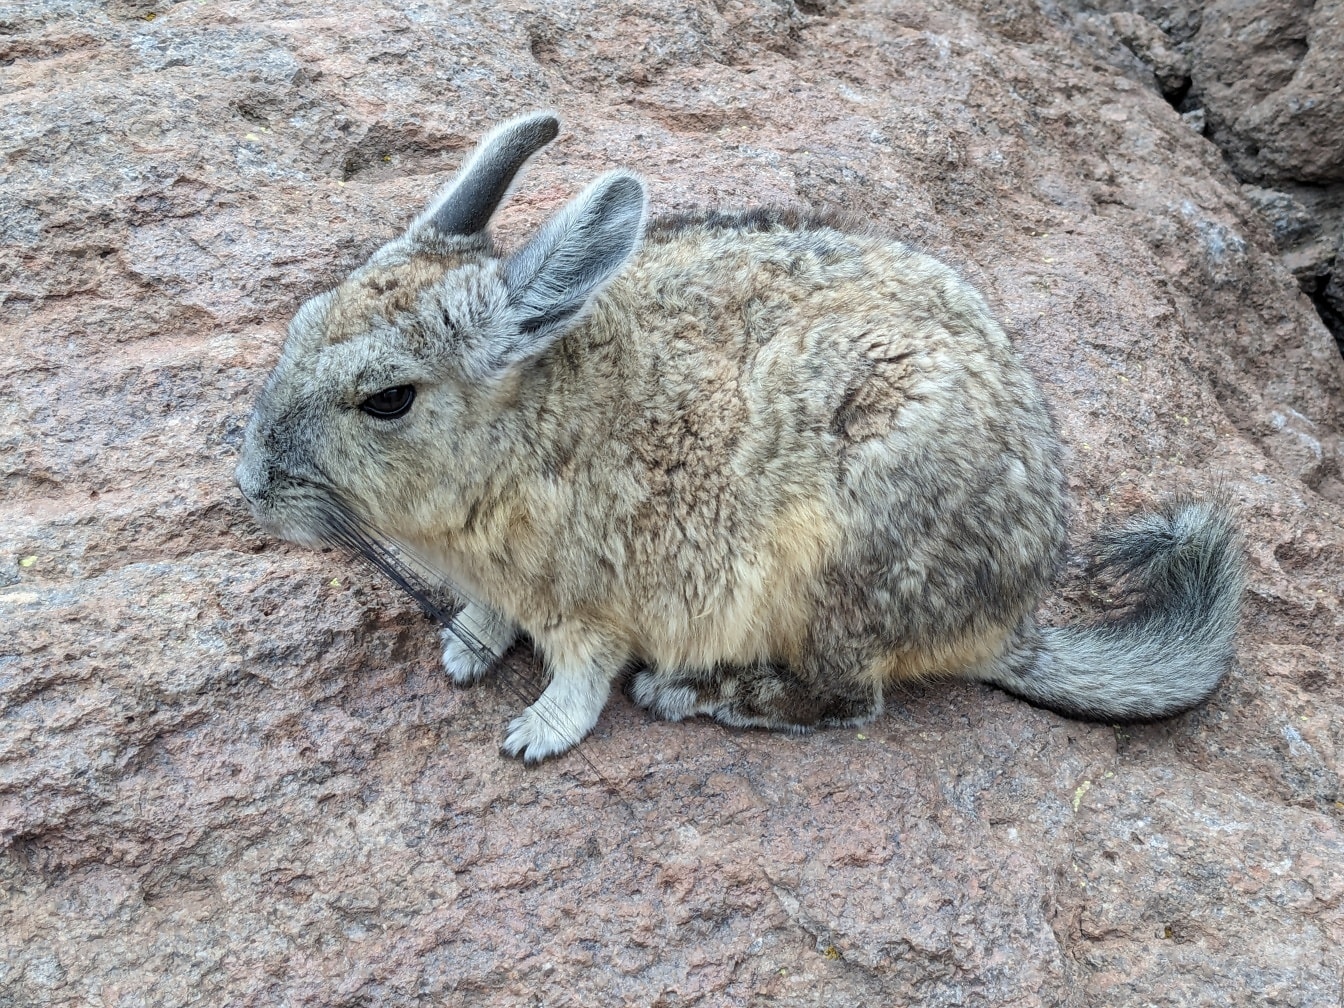 La viscacha meridionale, un piccolo roditore originario del Sud America, assomiglia ai conigli (Lagidium viscacia)